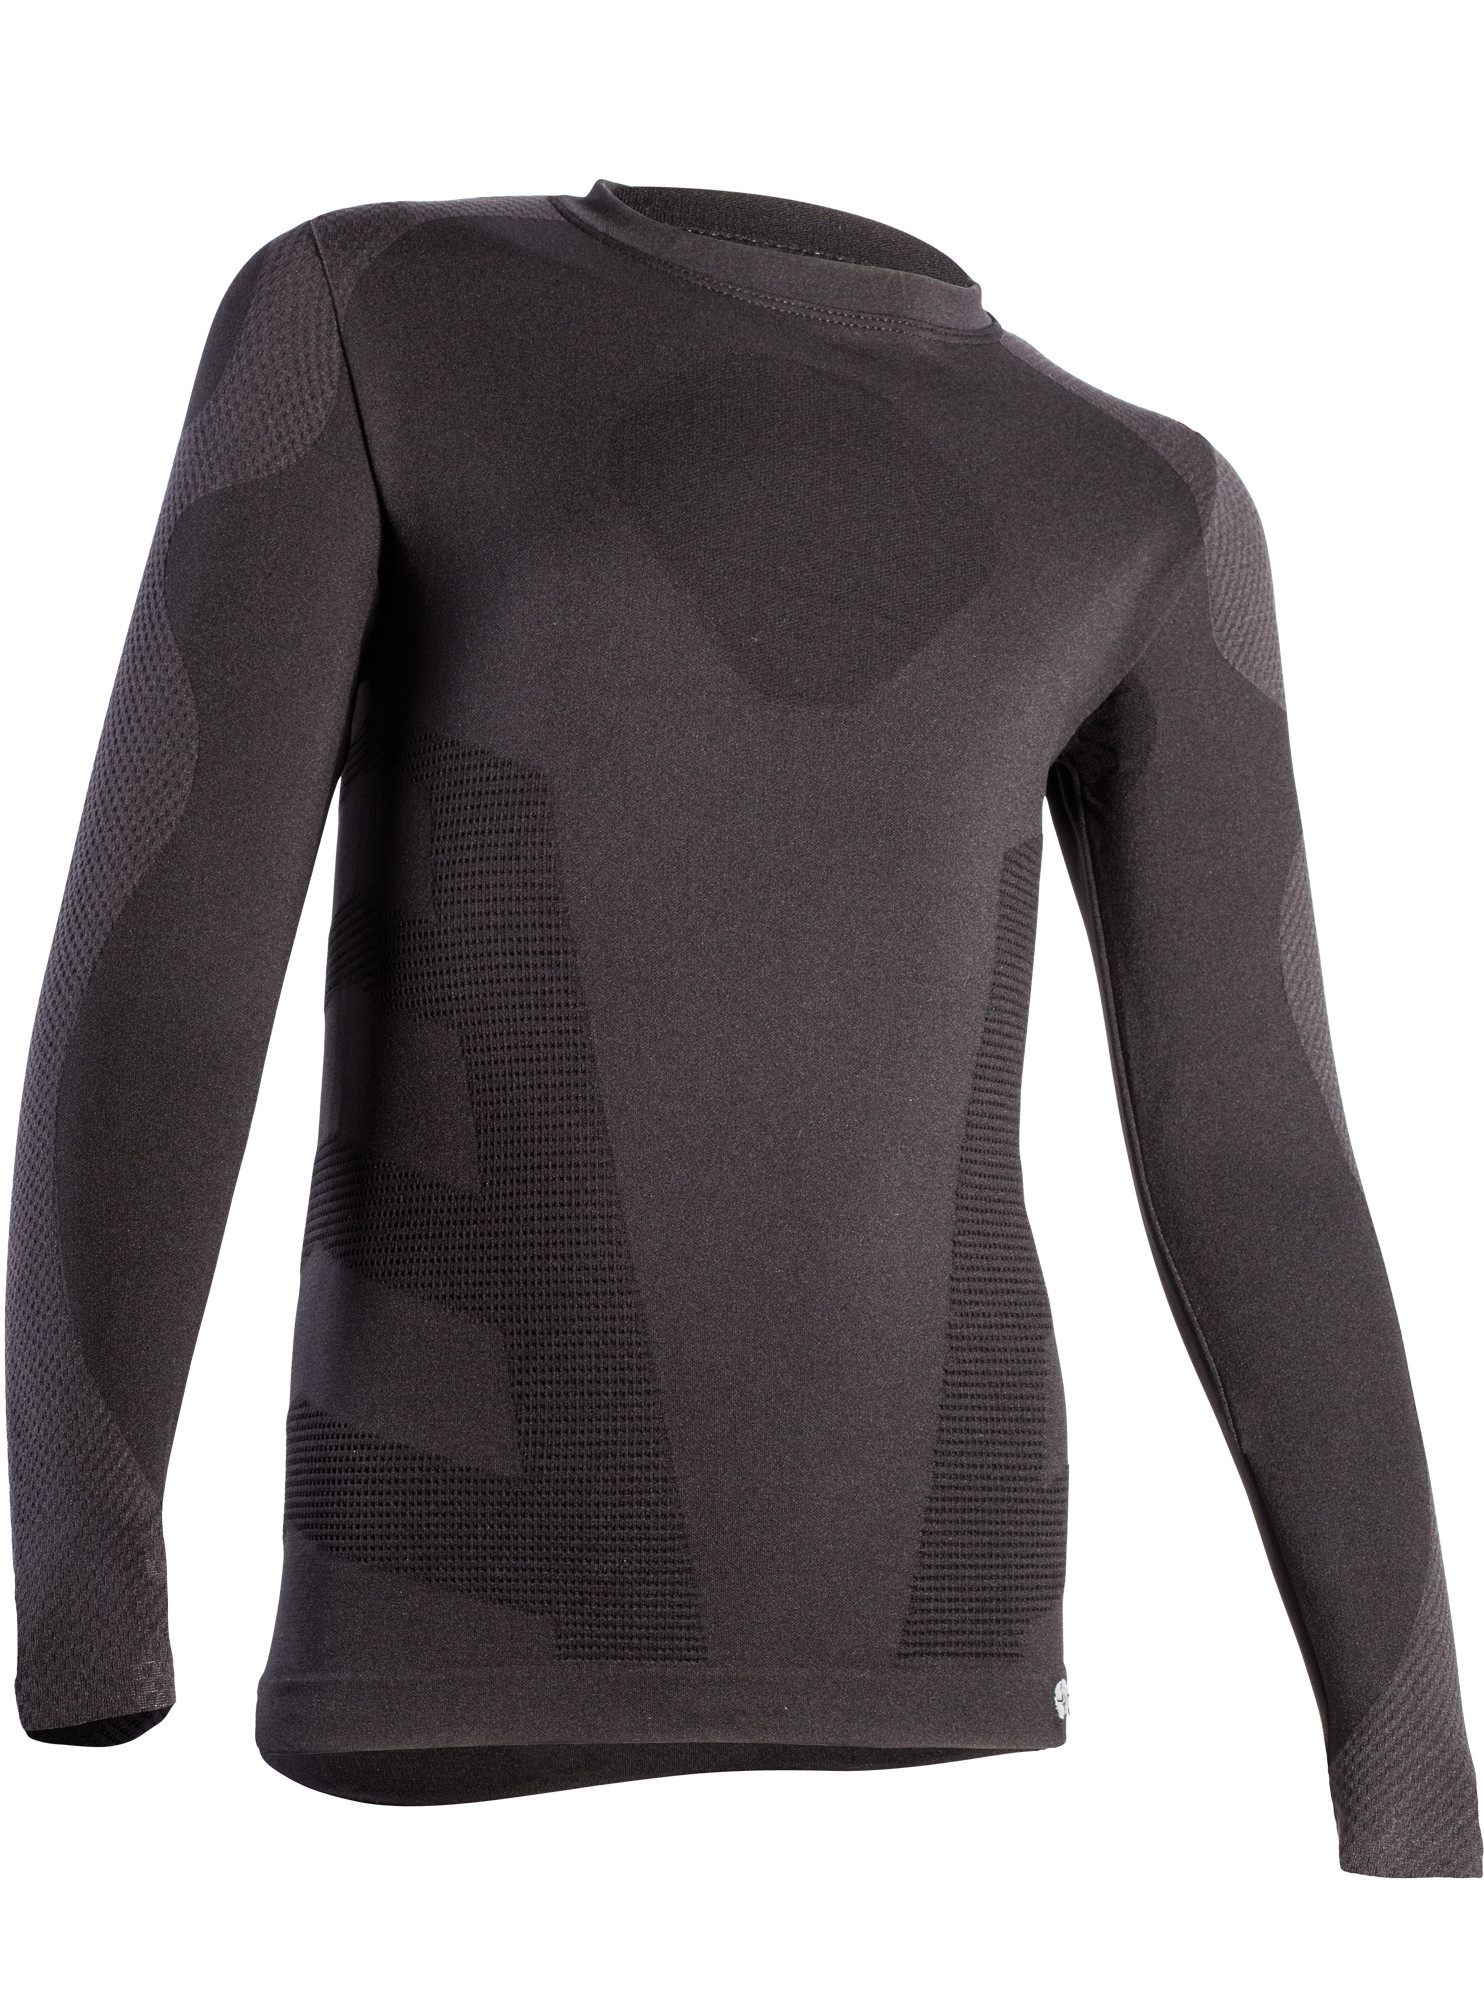 Dětské termo triko s dlouhým rukávem IRON-IC (fleece) - černá Barva: Černá, Velikost: 12/14